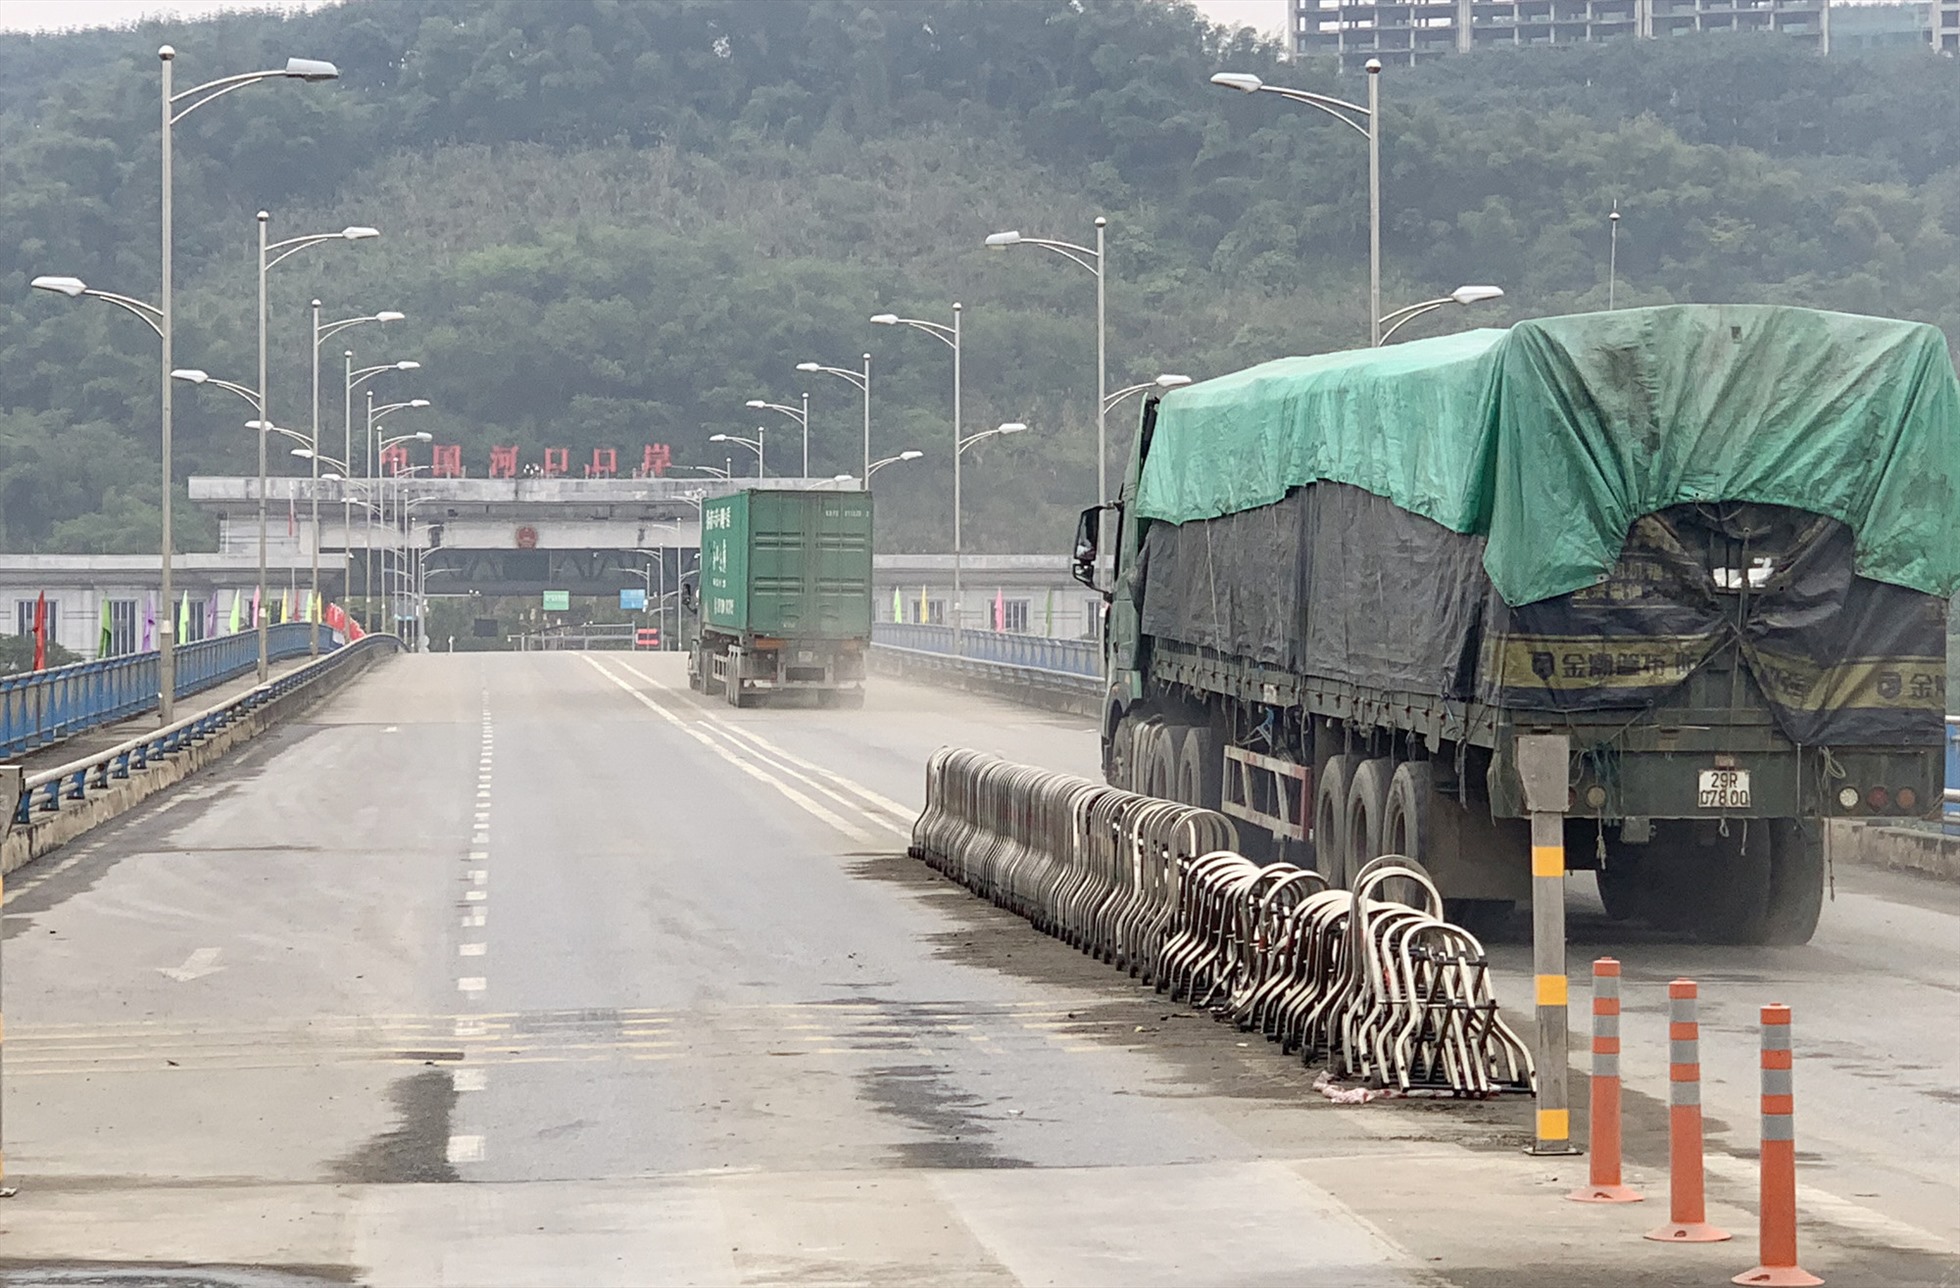 Cửa khẩu quốc tế đường bộ số II (Kim Thành): Mở cửa từ 7h00 đến 22h00 hàng ngày (giờ Hà Nội) kể cả ngày nghỉ, ngày Lễ, ngày Tết cho các đối tượng: Lái xe vận chuyển hàng hóa qua cửa khẩu.